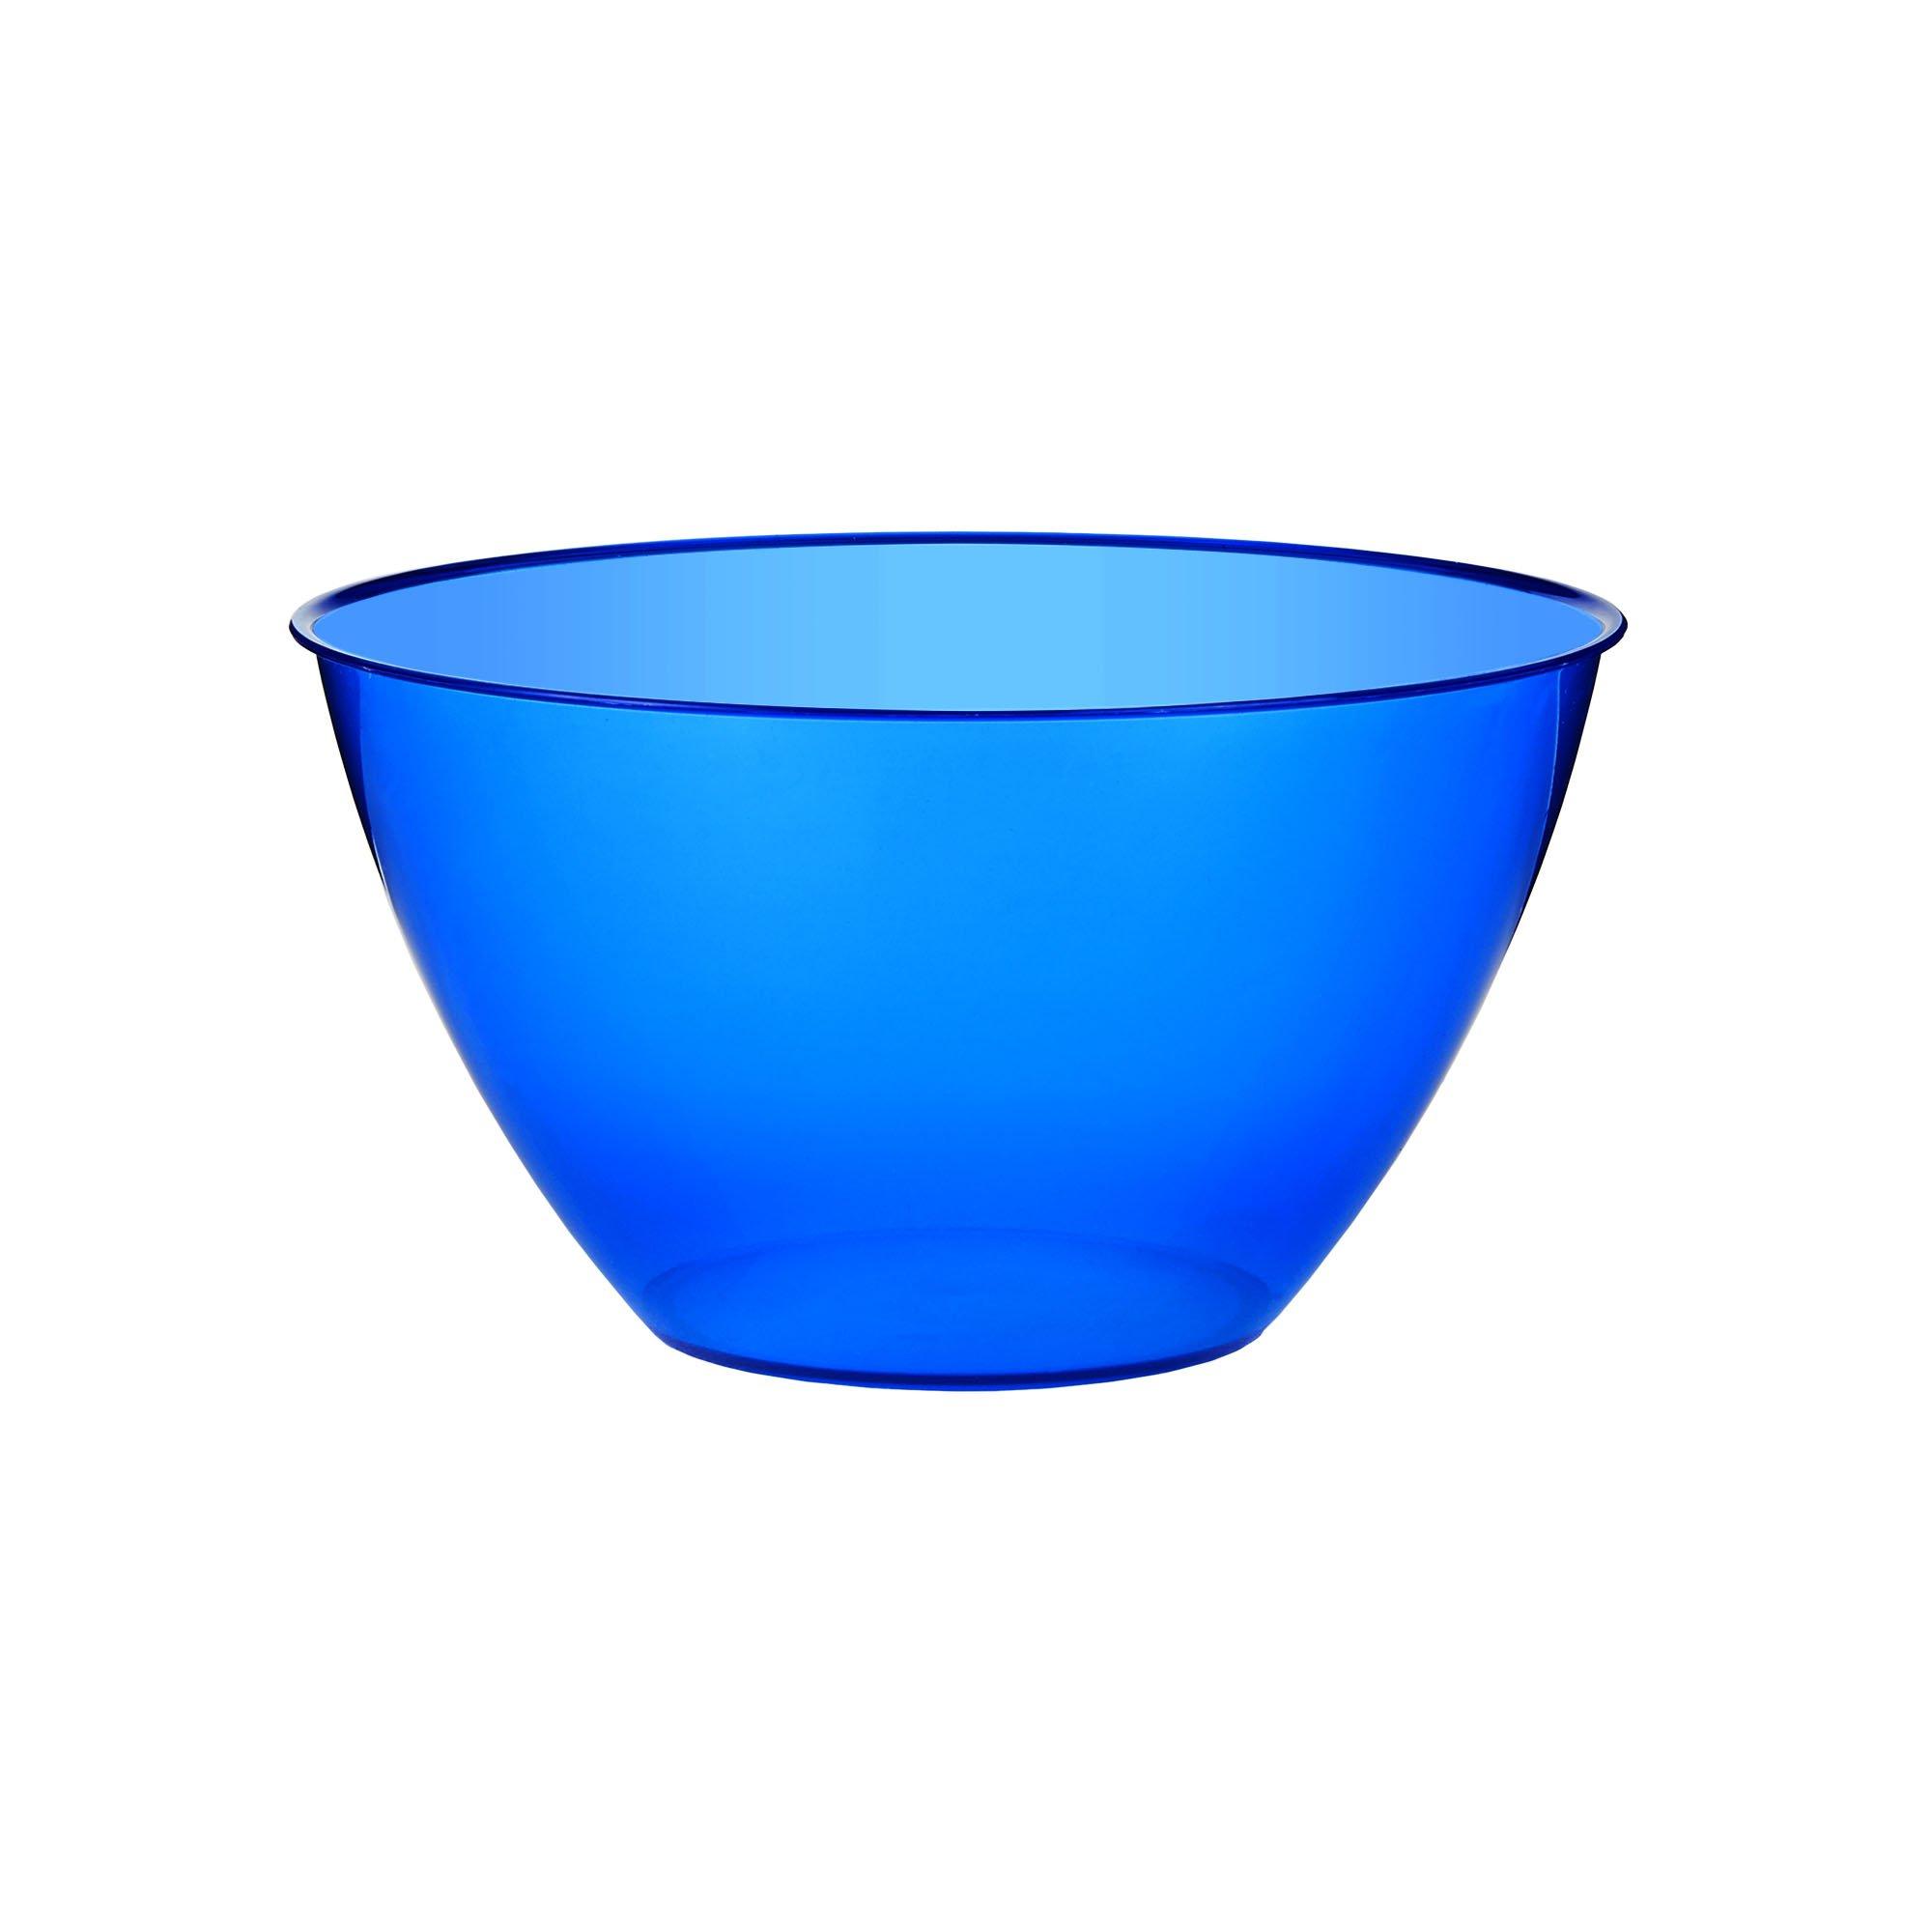 Small Plastic Bowl, 5.5in, 24oz